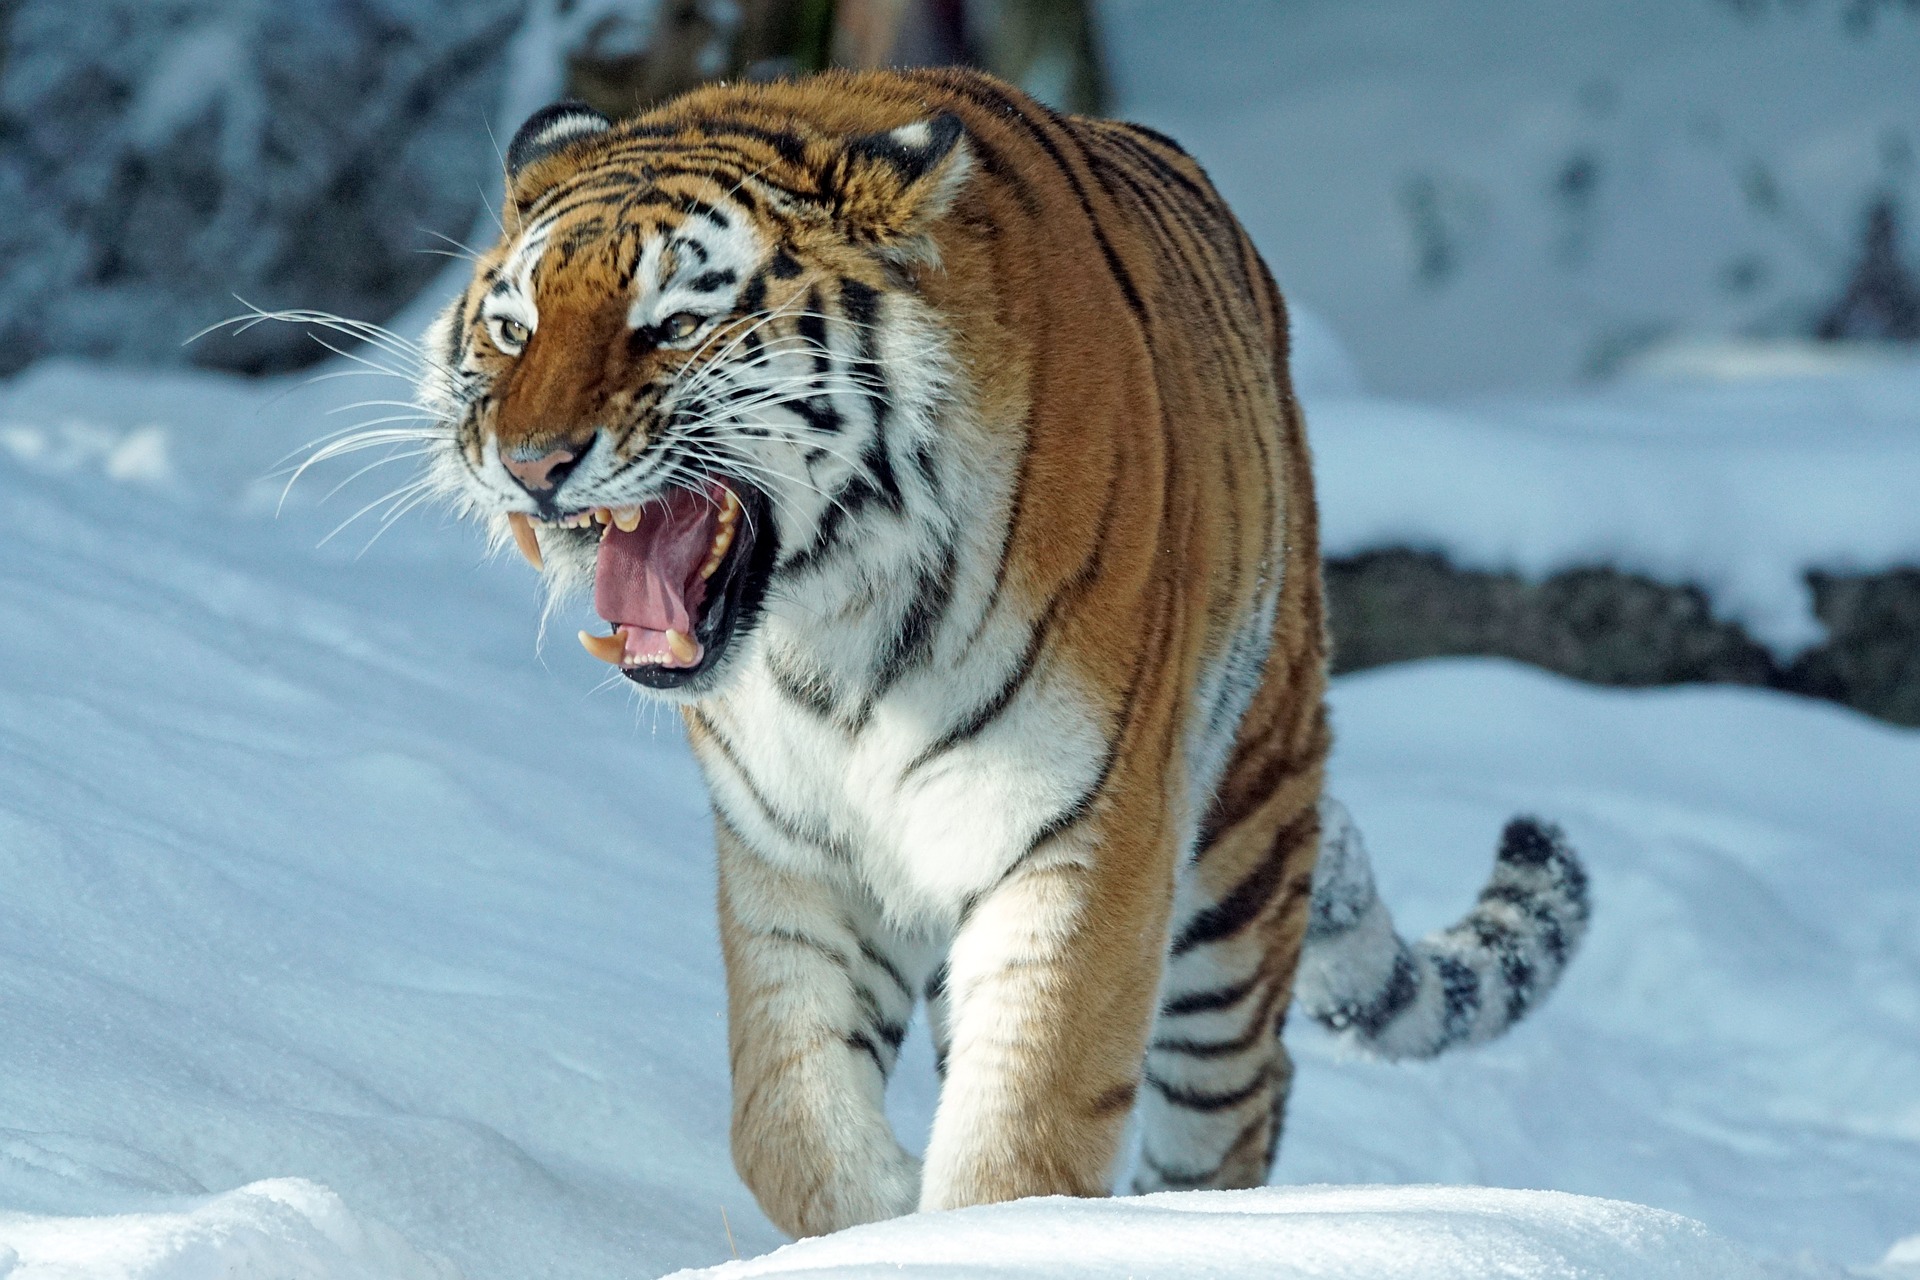 animal, tiger, snarl, snow, winter, cats